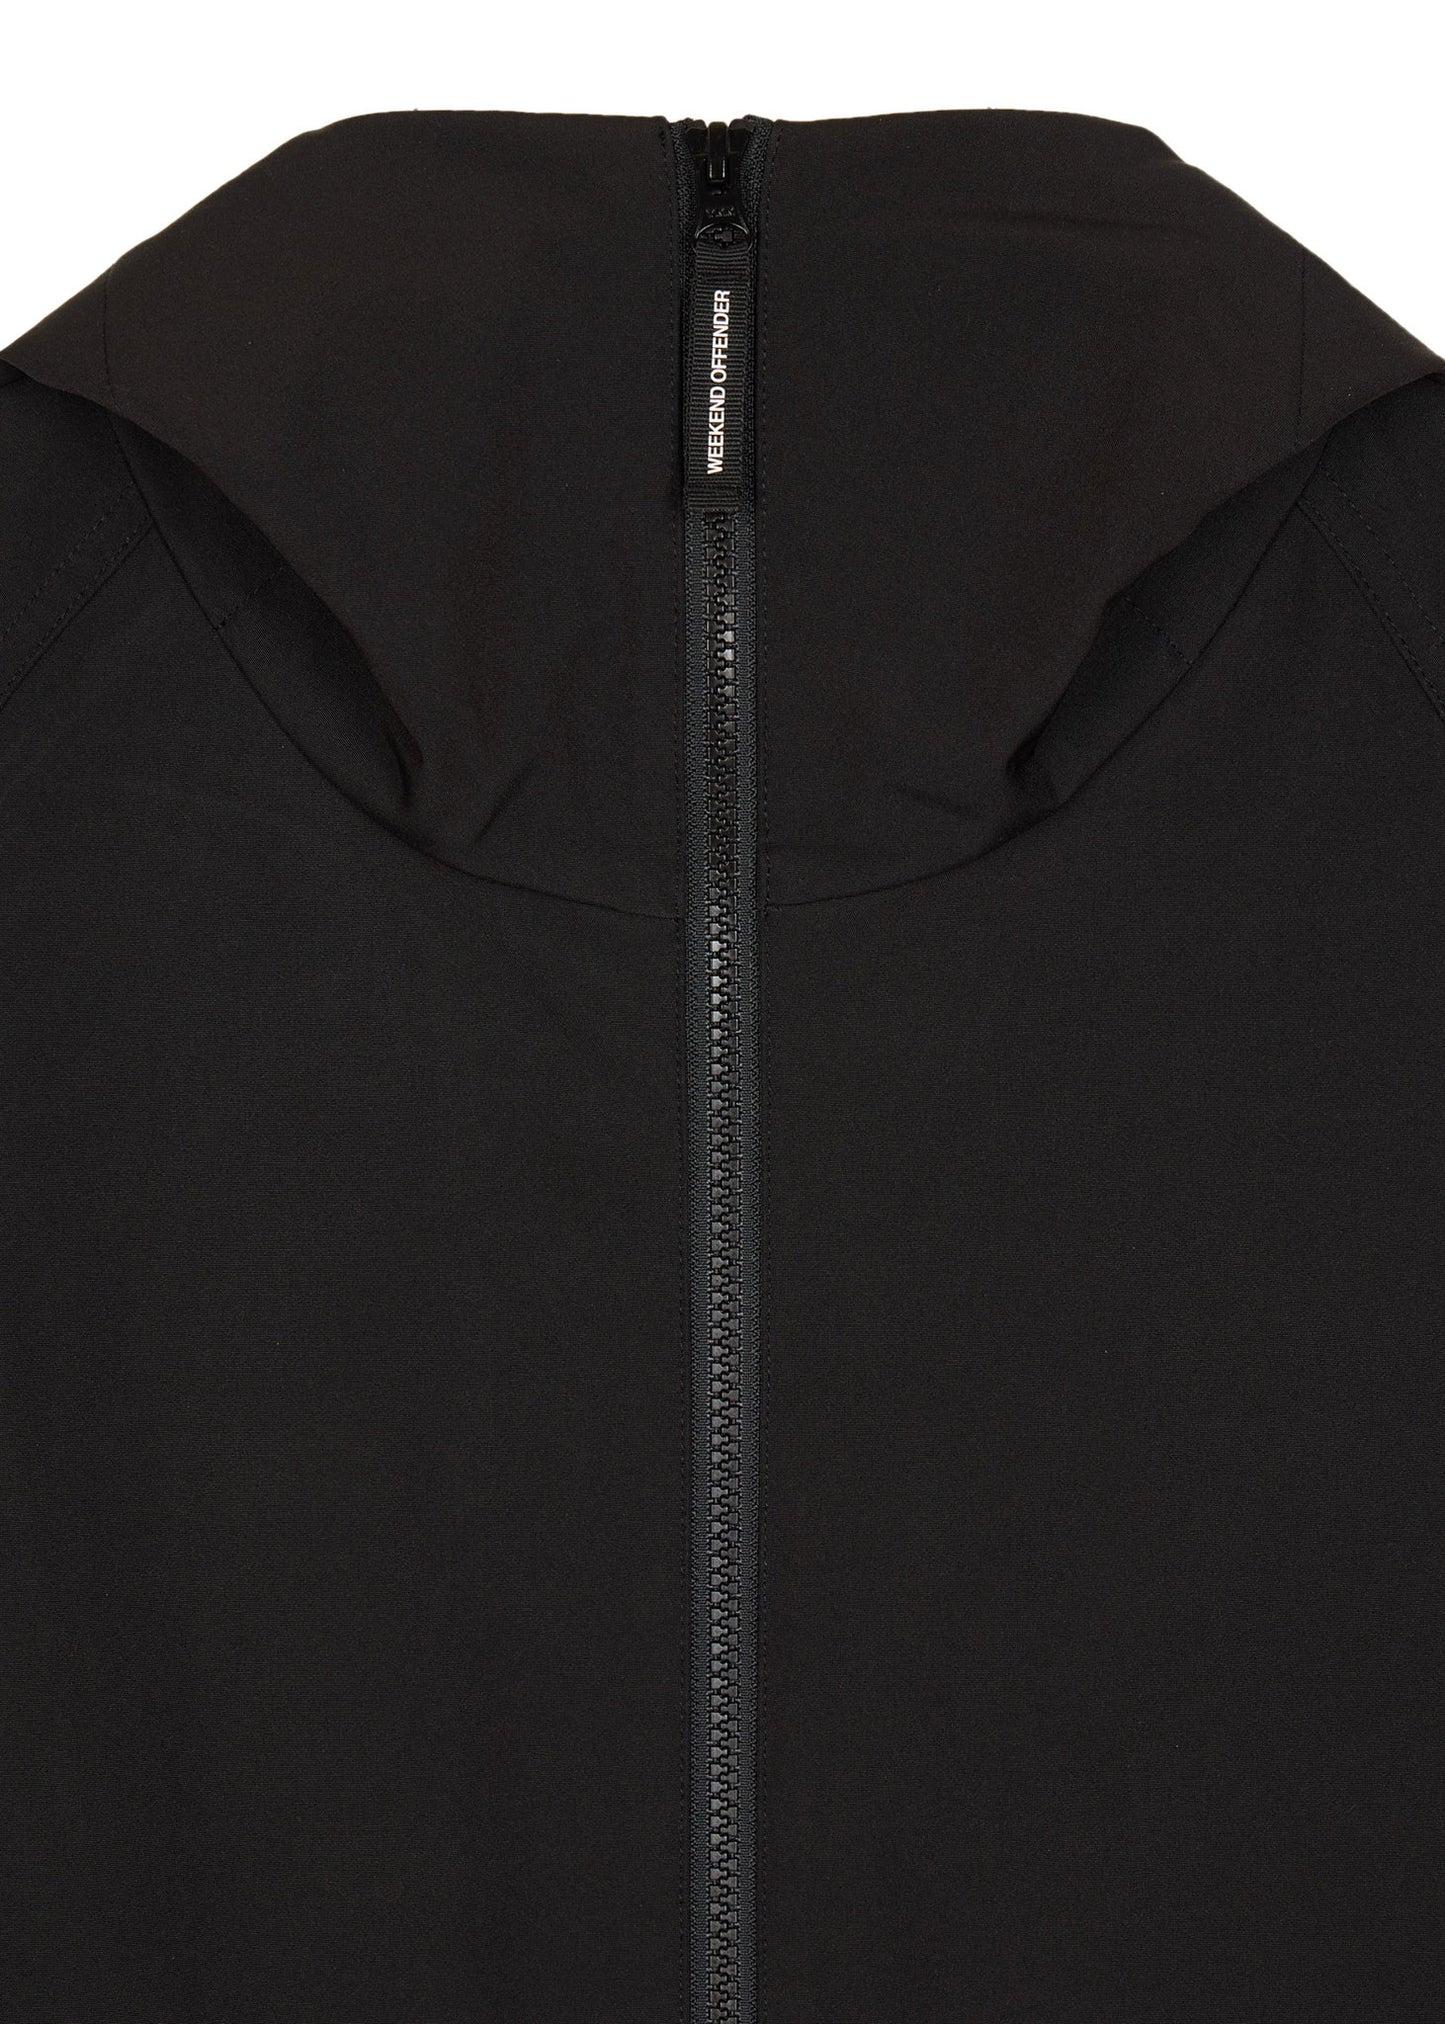 Stipe softshell jacket - black